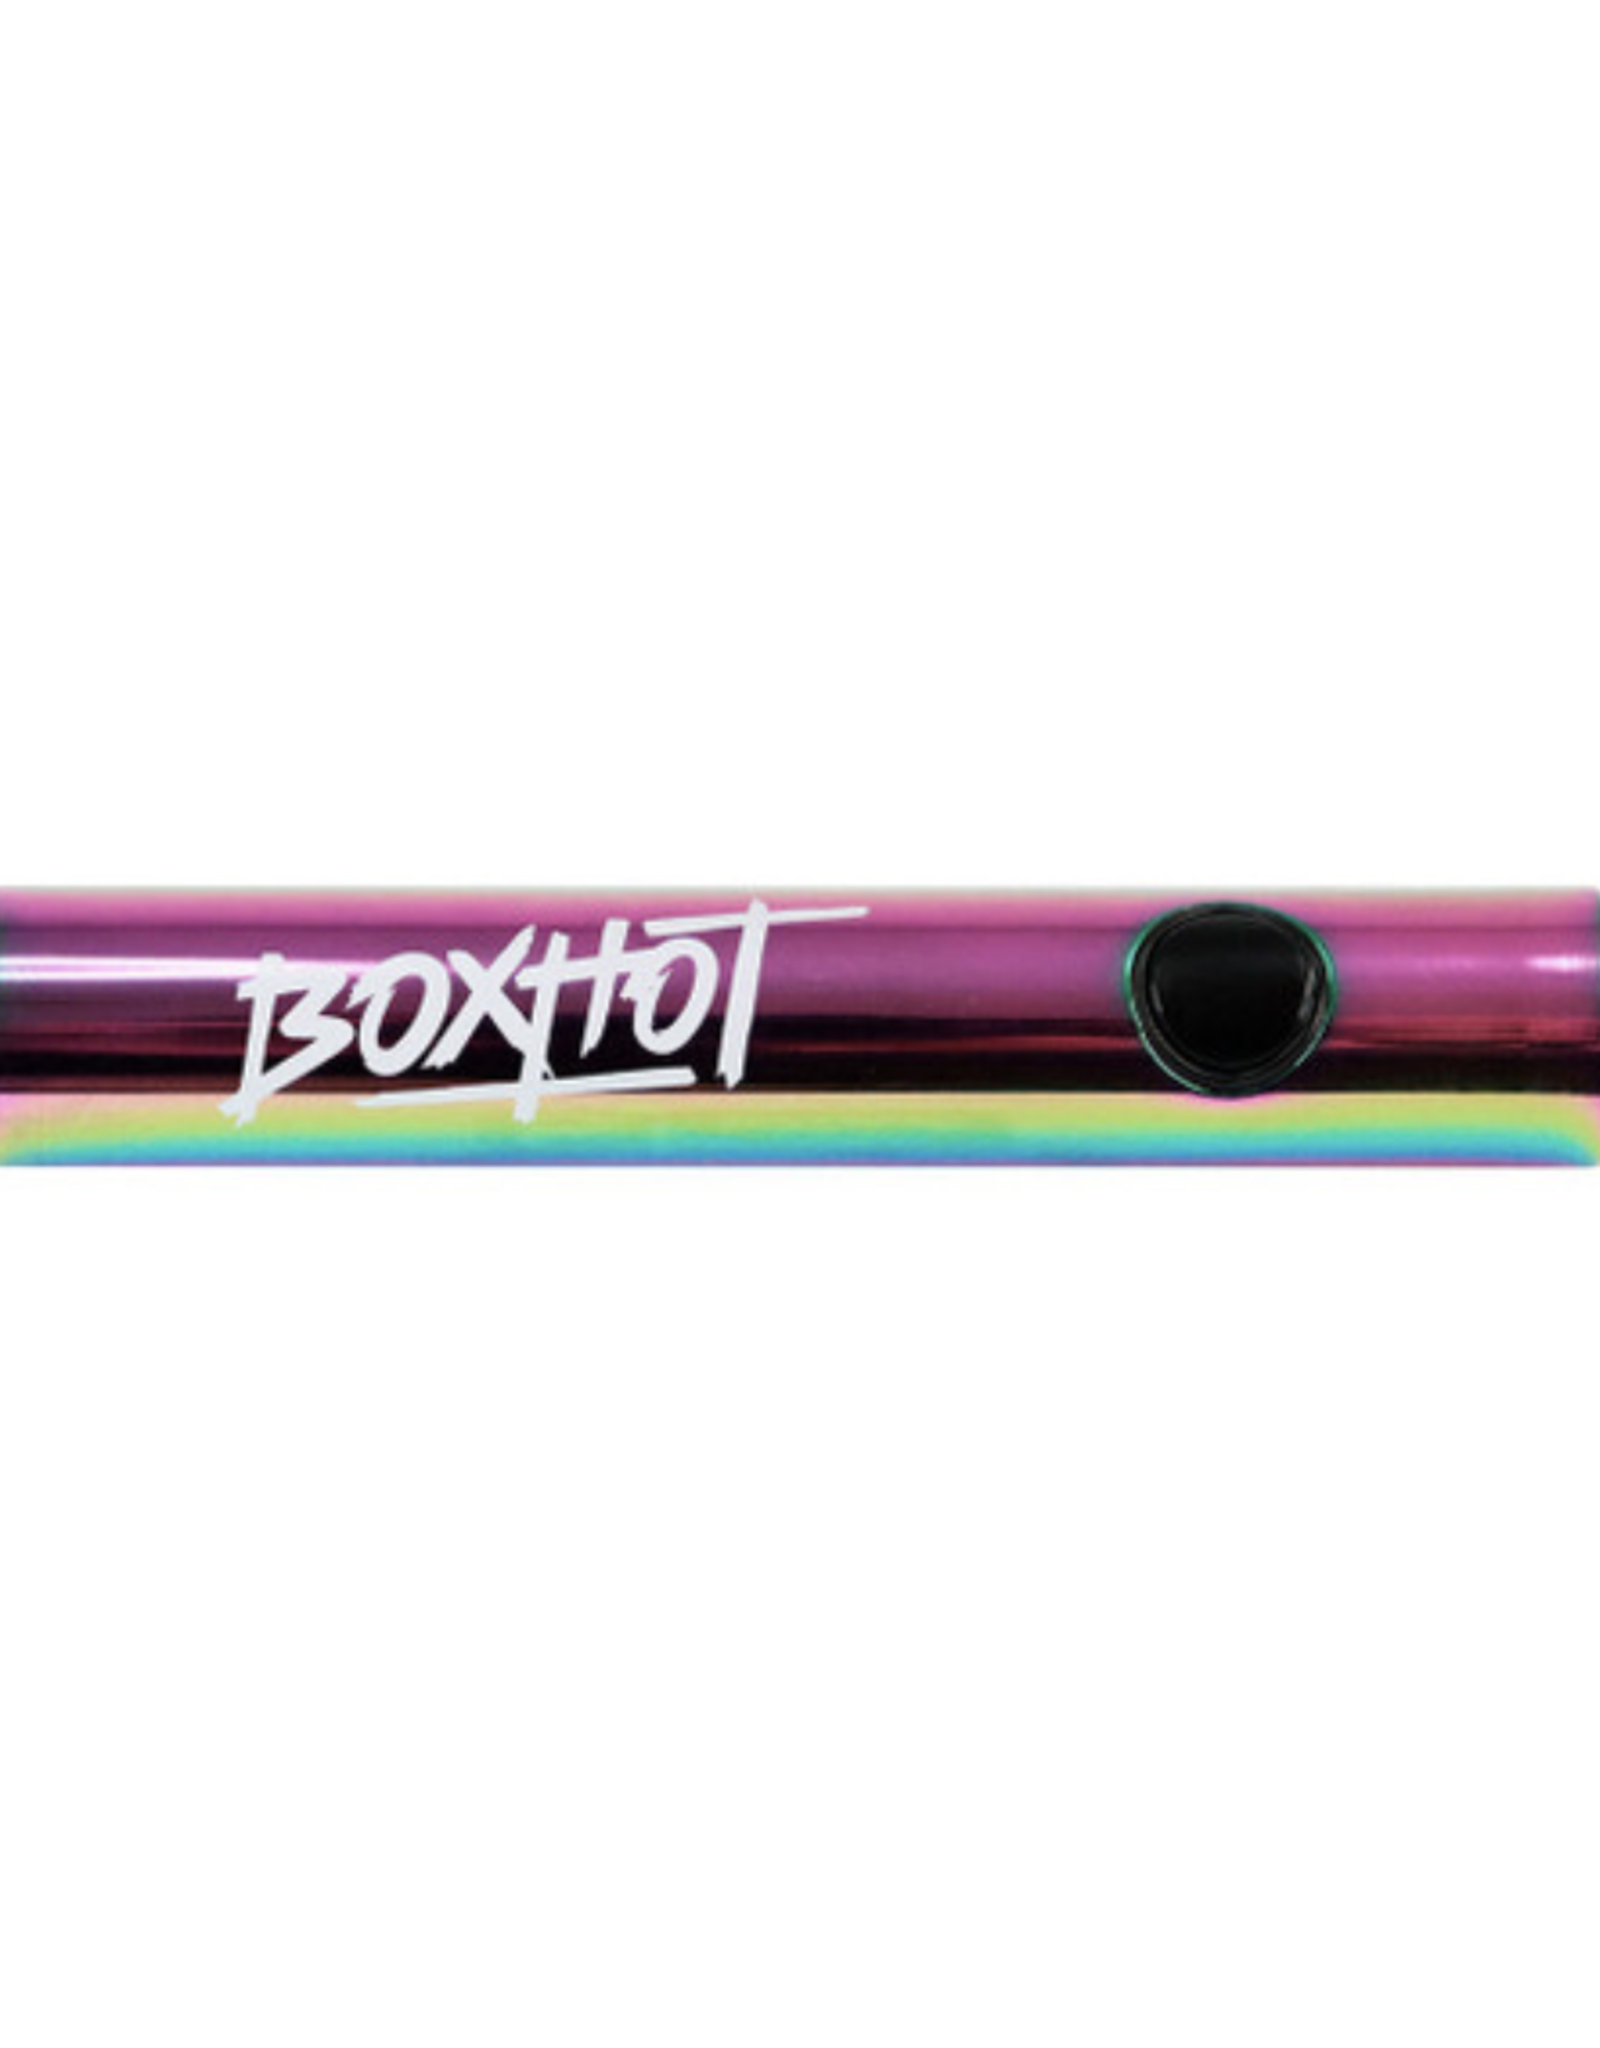 BOXHOT Glow Stick 2.0 510 Battery - Prism